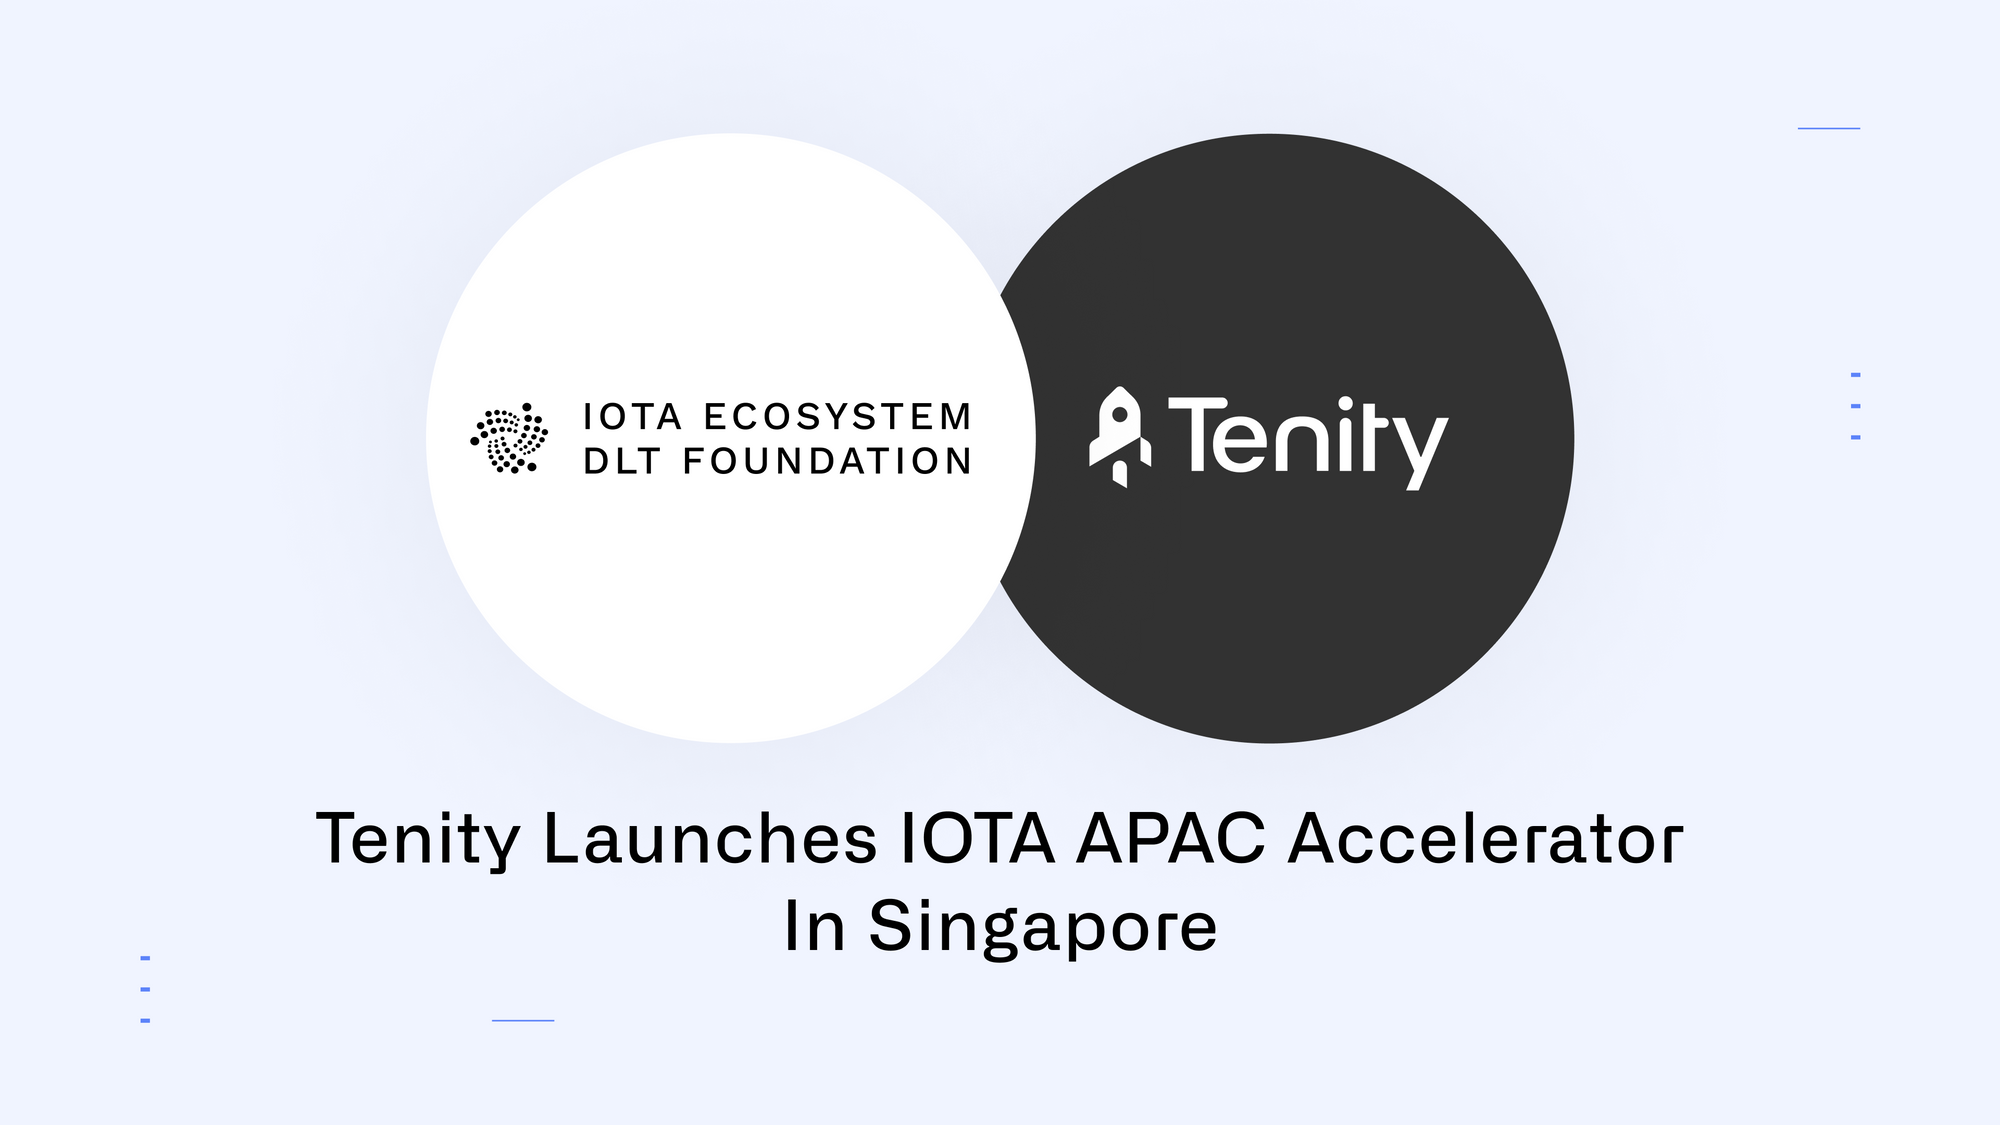 Tenity Launches IOTA APAC Accelerator in Singapore